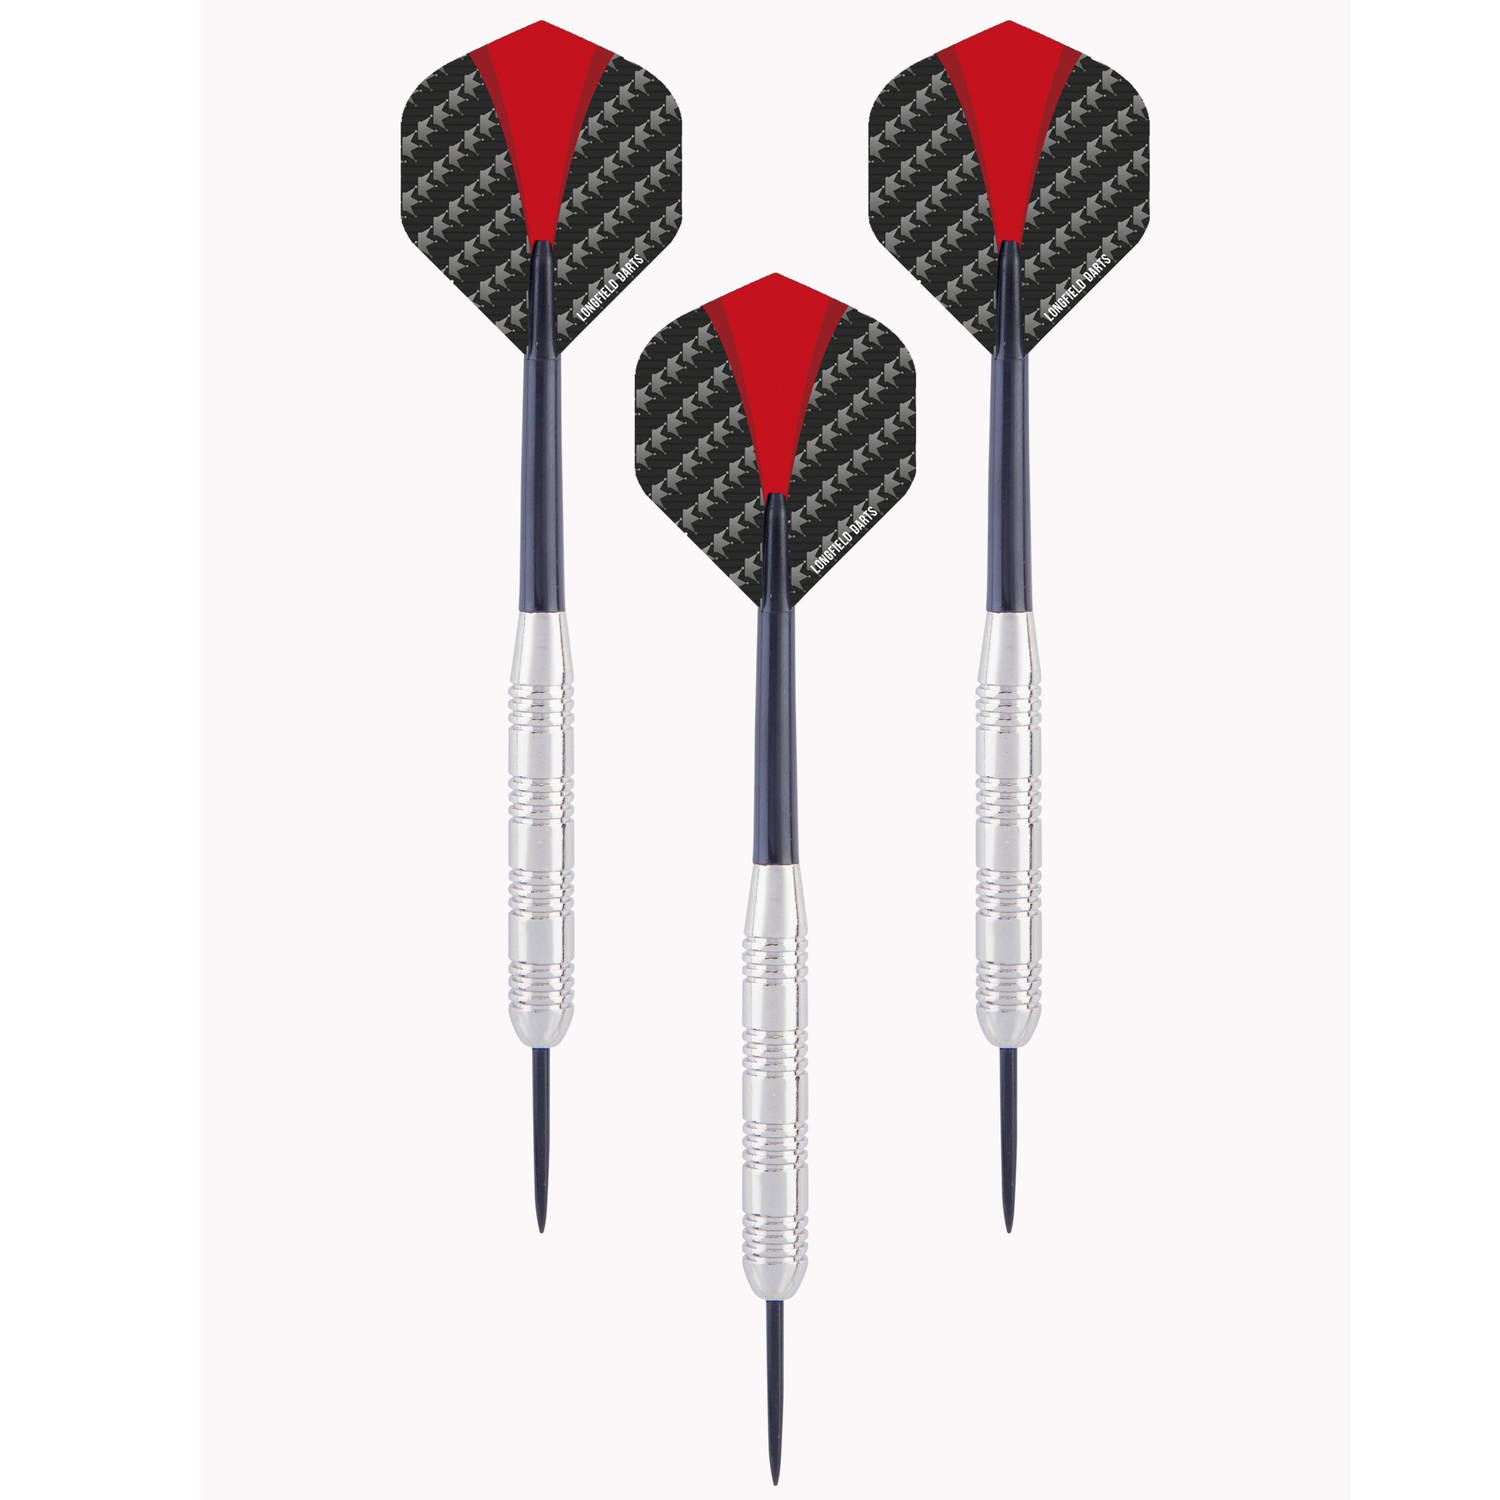 2x Set van dartpijltjes met rood met zwarte flights 23 grams - Dartpijlen